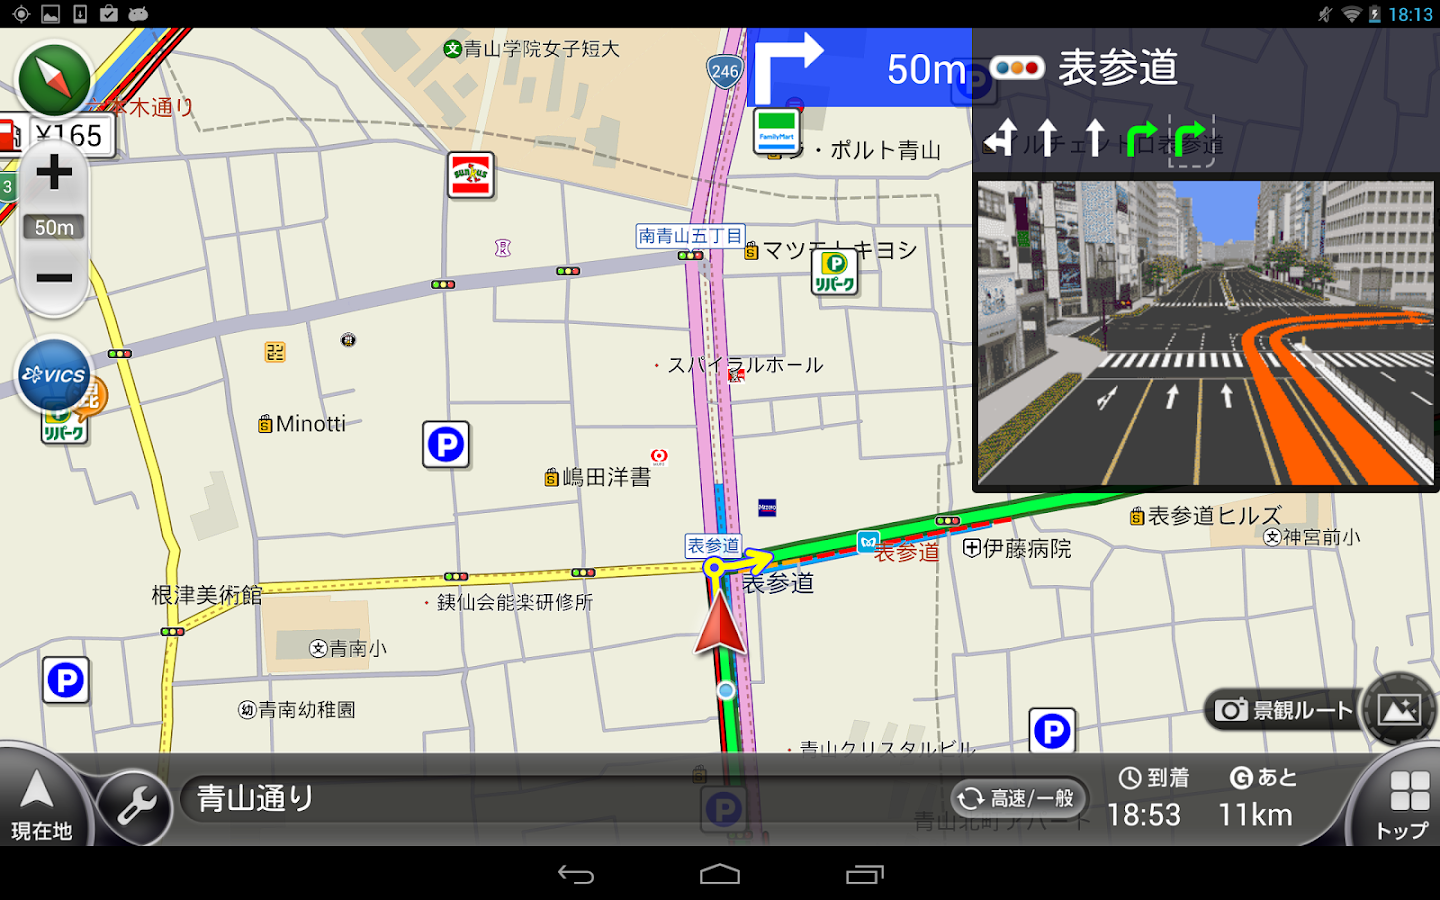 カーナビ/渋滞/オービス-NAVITIMEドライブサポーター - Android Apps on ...